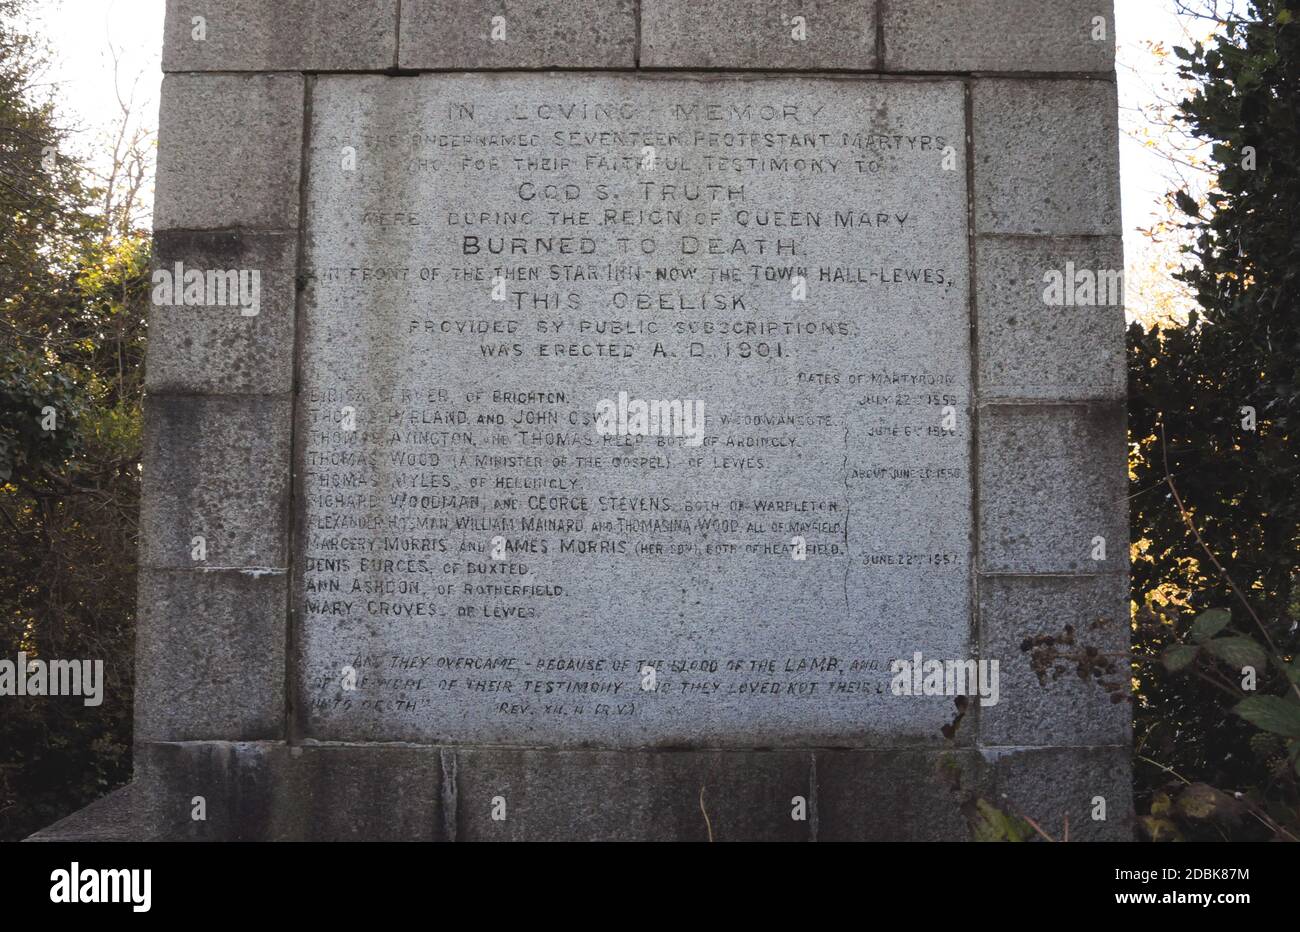 Il Memoriale dei Martiri si trova sulla collina di Cliffe, nella città di Lewes, nel Sussex orientale. Ricorda i 17 martiri protestanti bruciati a morte in città. Foto Stock